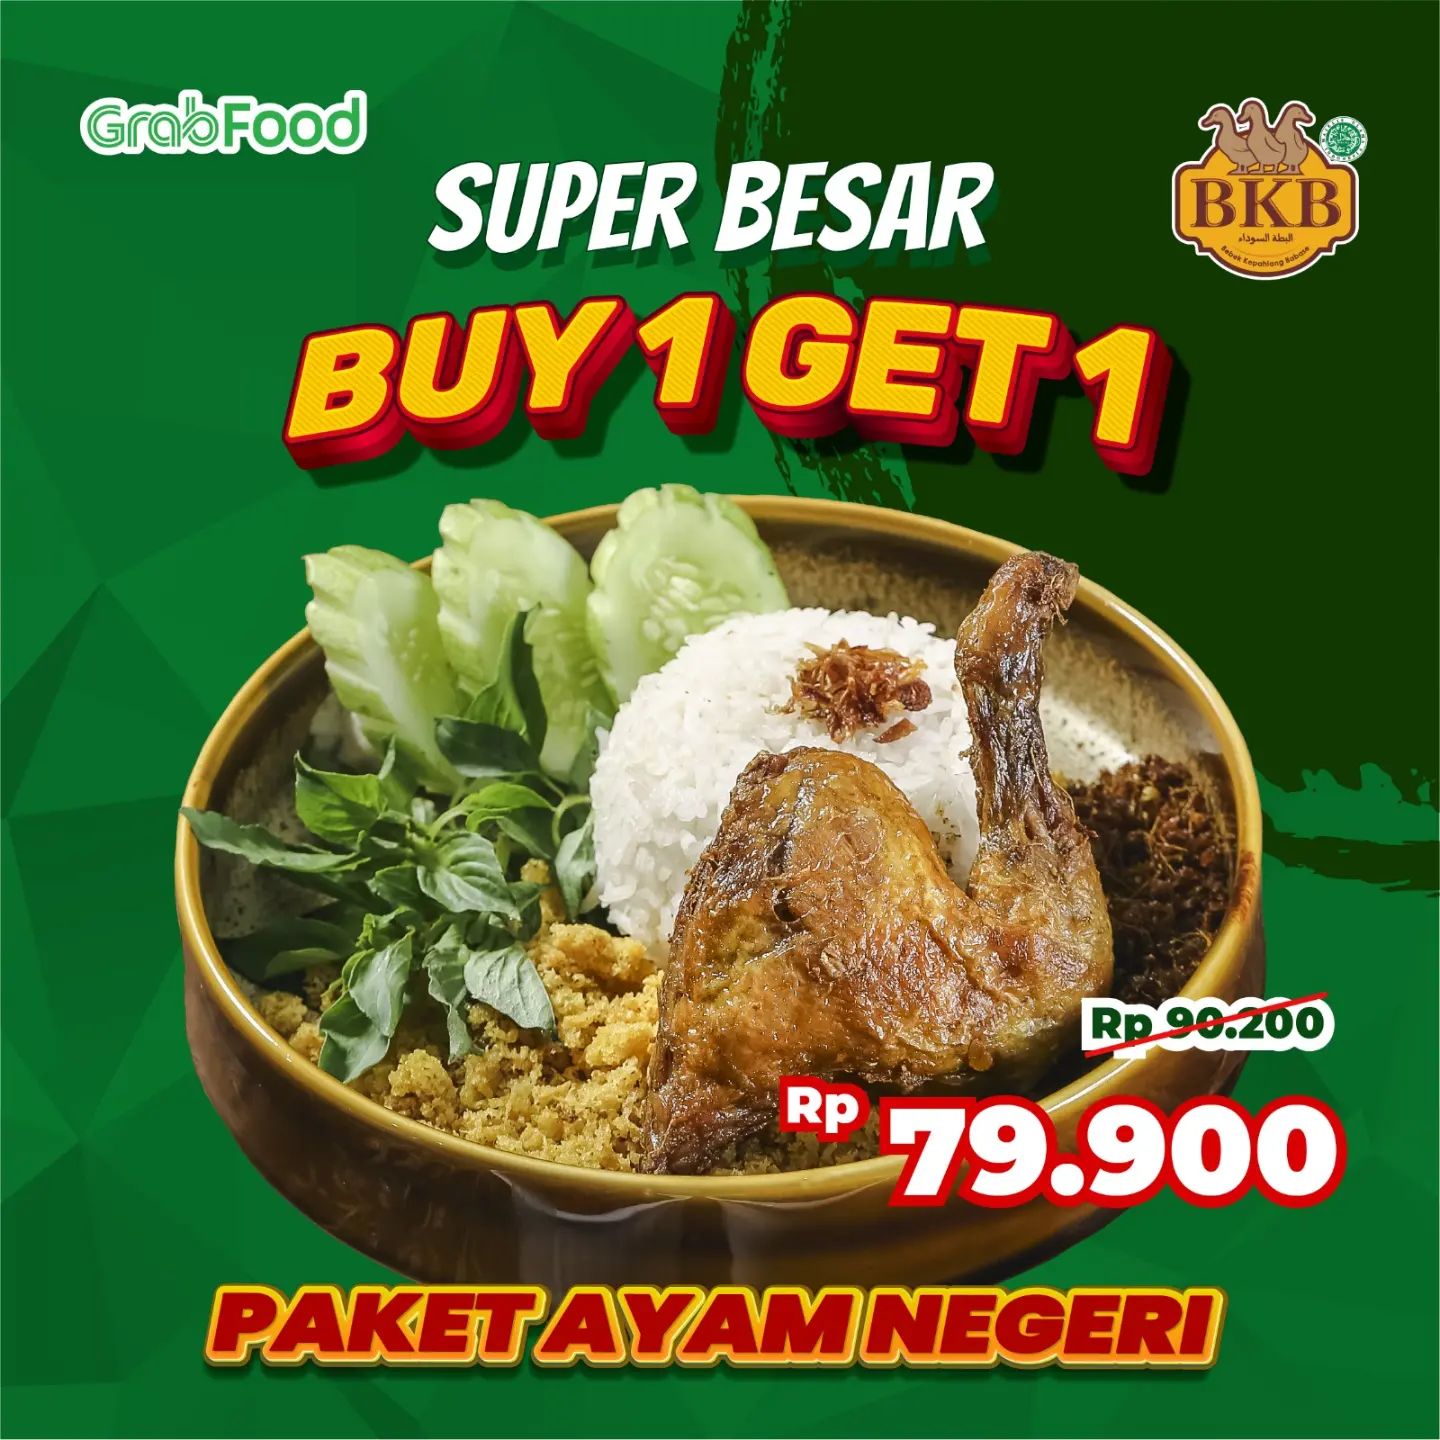 Promo BEBEK BKB GRABFOOD Super Besar Buy 1 Get 1 Paket Ayam Negeri Goreng